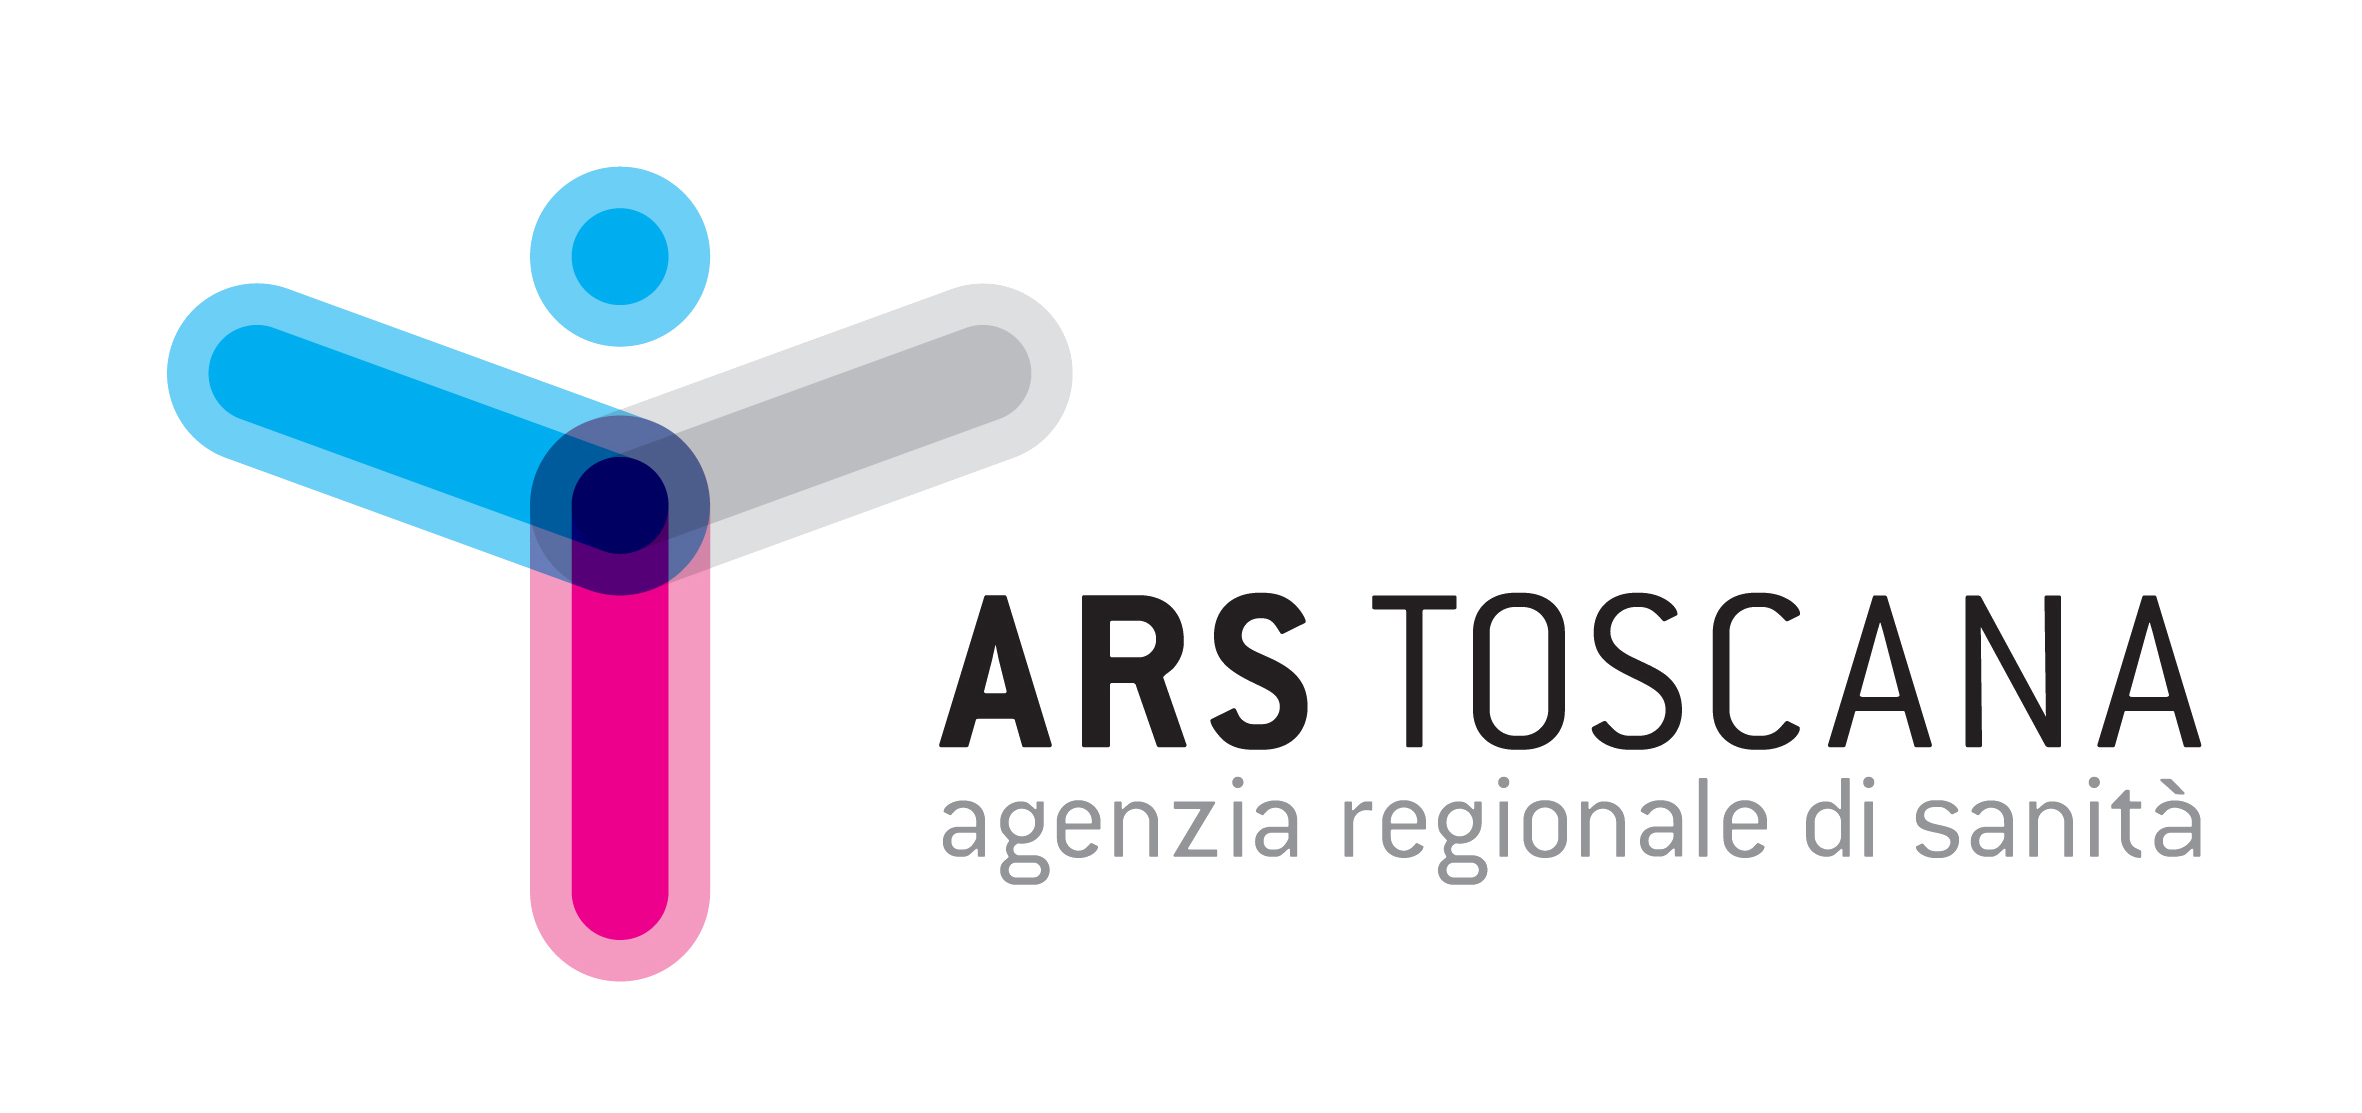 Agendia regionale si sanità della Toscana